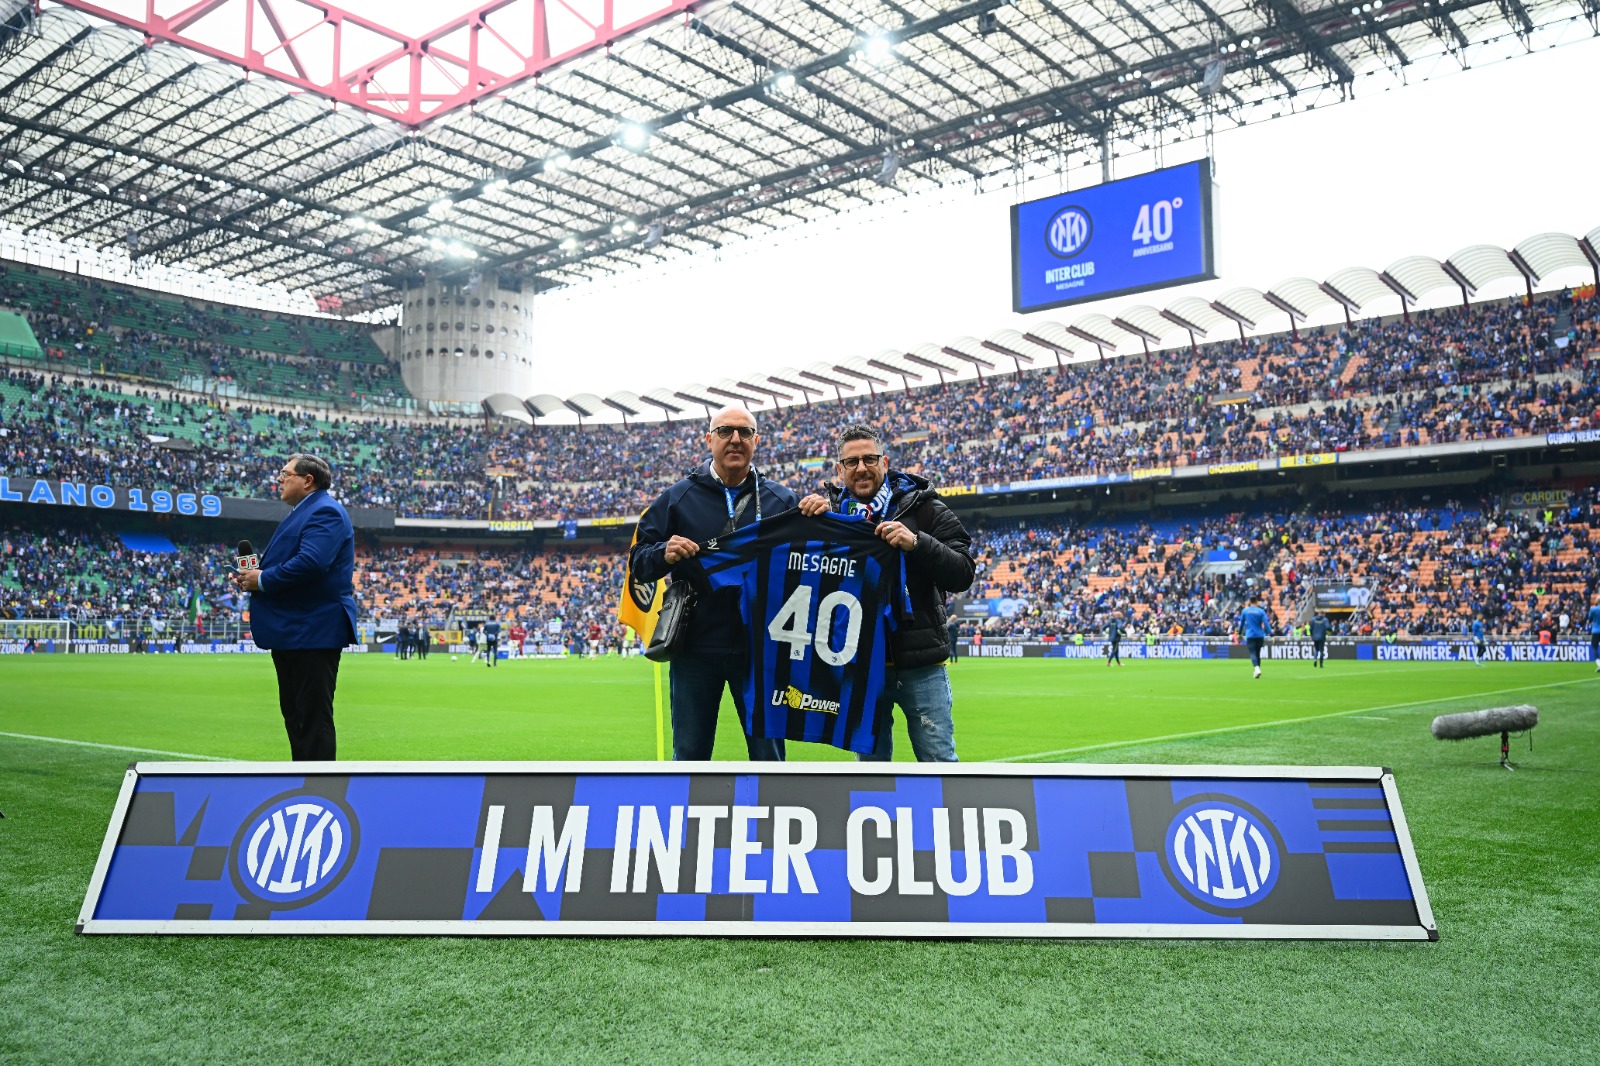 Mesagne: Inter Club Mesagne “Sandro Mazzola” Riconoscimento